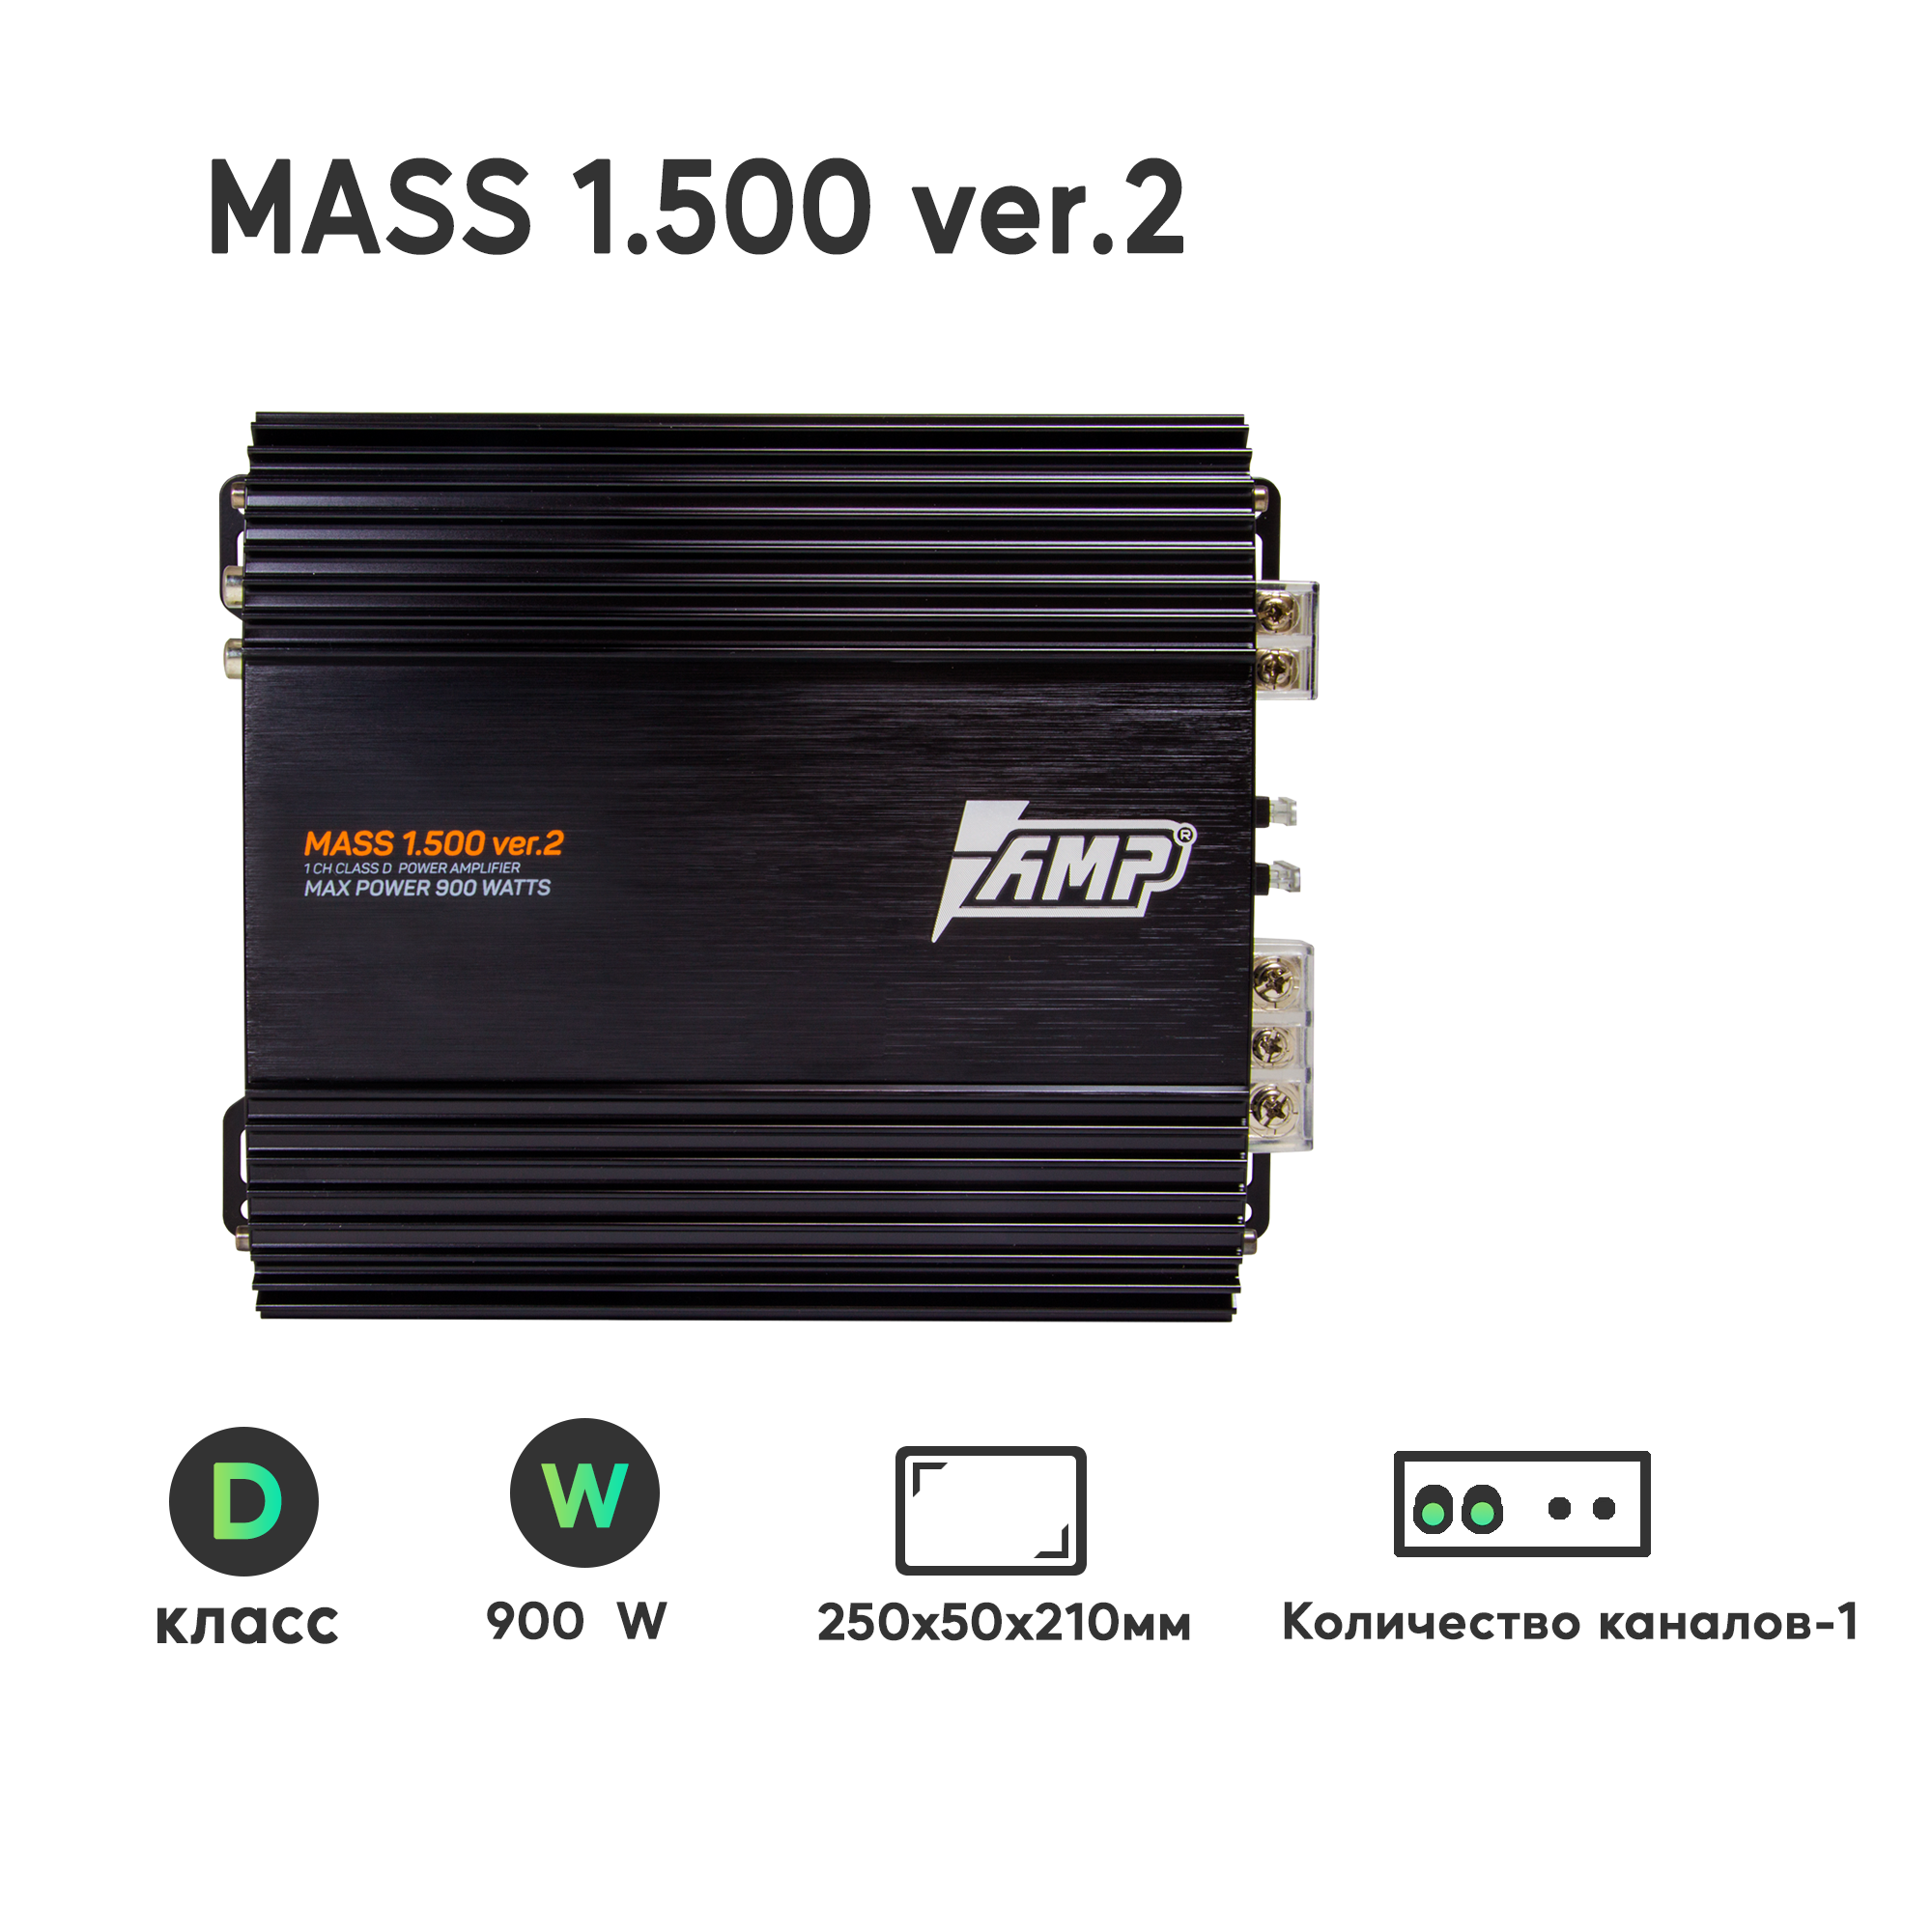 Усилитель автомобильный AMP MASS 1.500 ver.2 (900 Вт, класс D) одноканальный